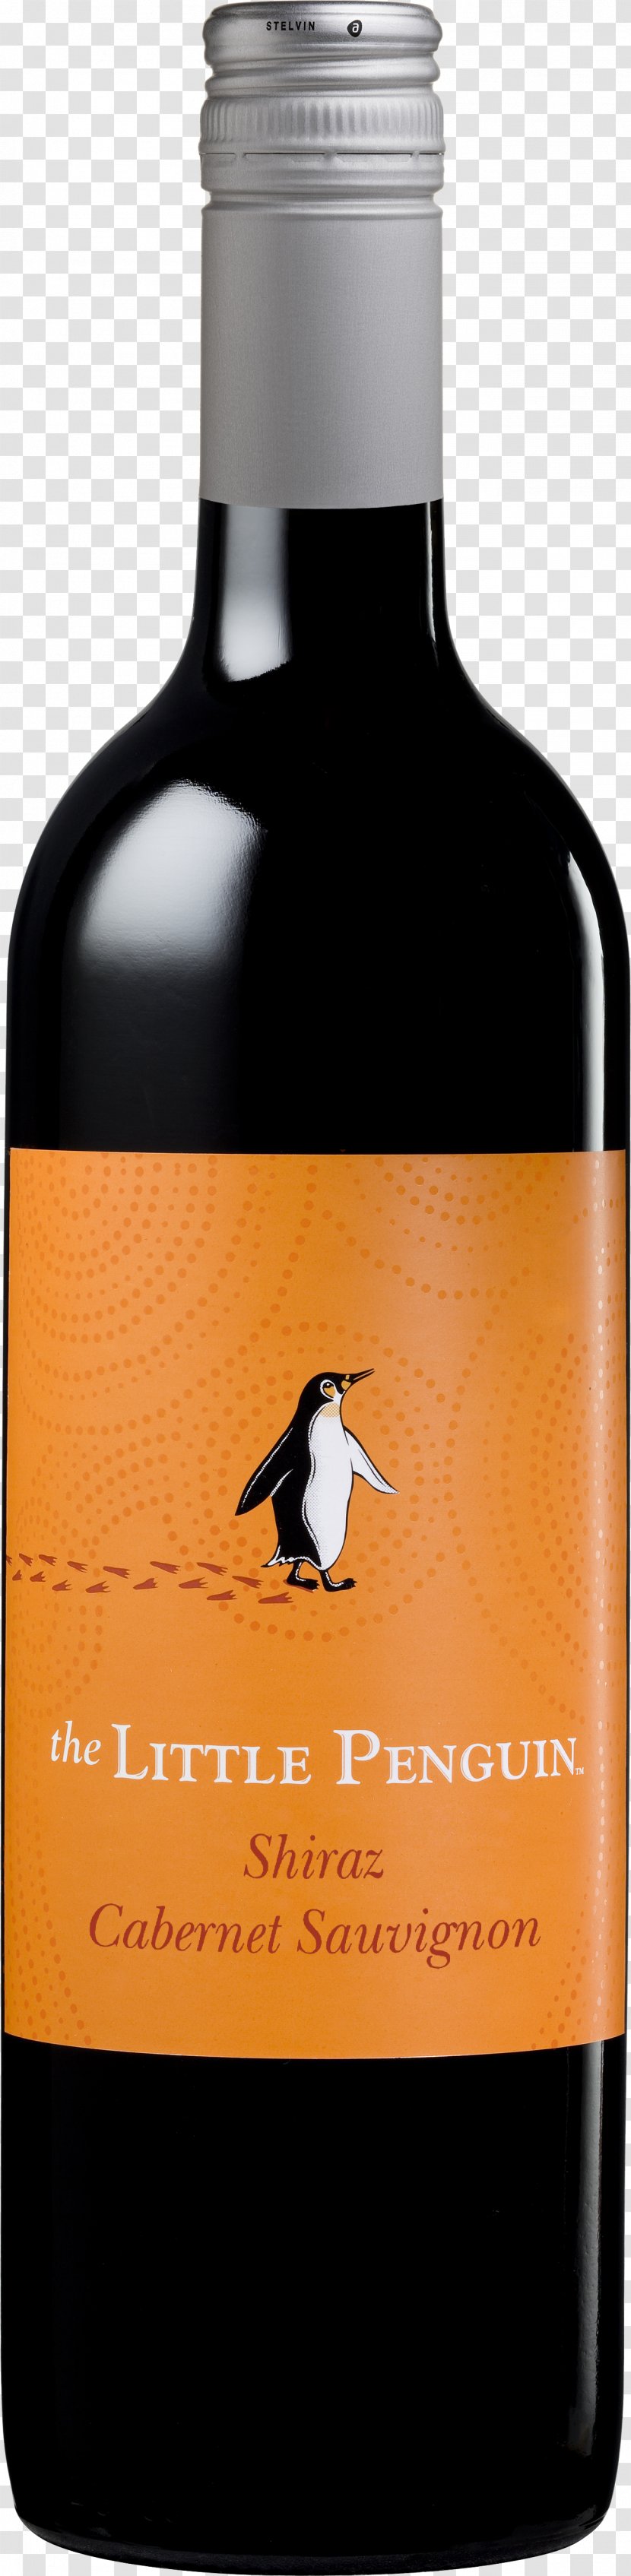 Liqueur Wine Cabernet Sauvignon Shiraz Penguin - Drink Transparent PNG